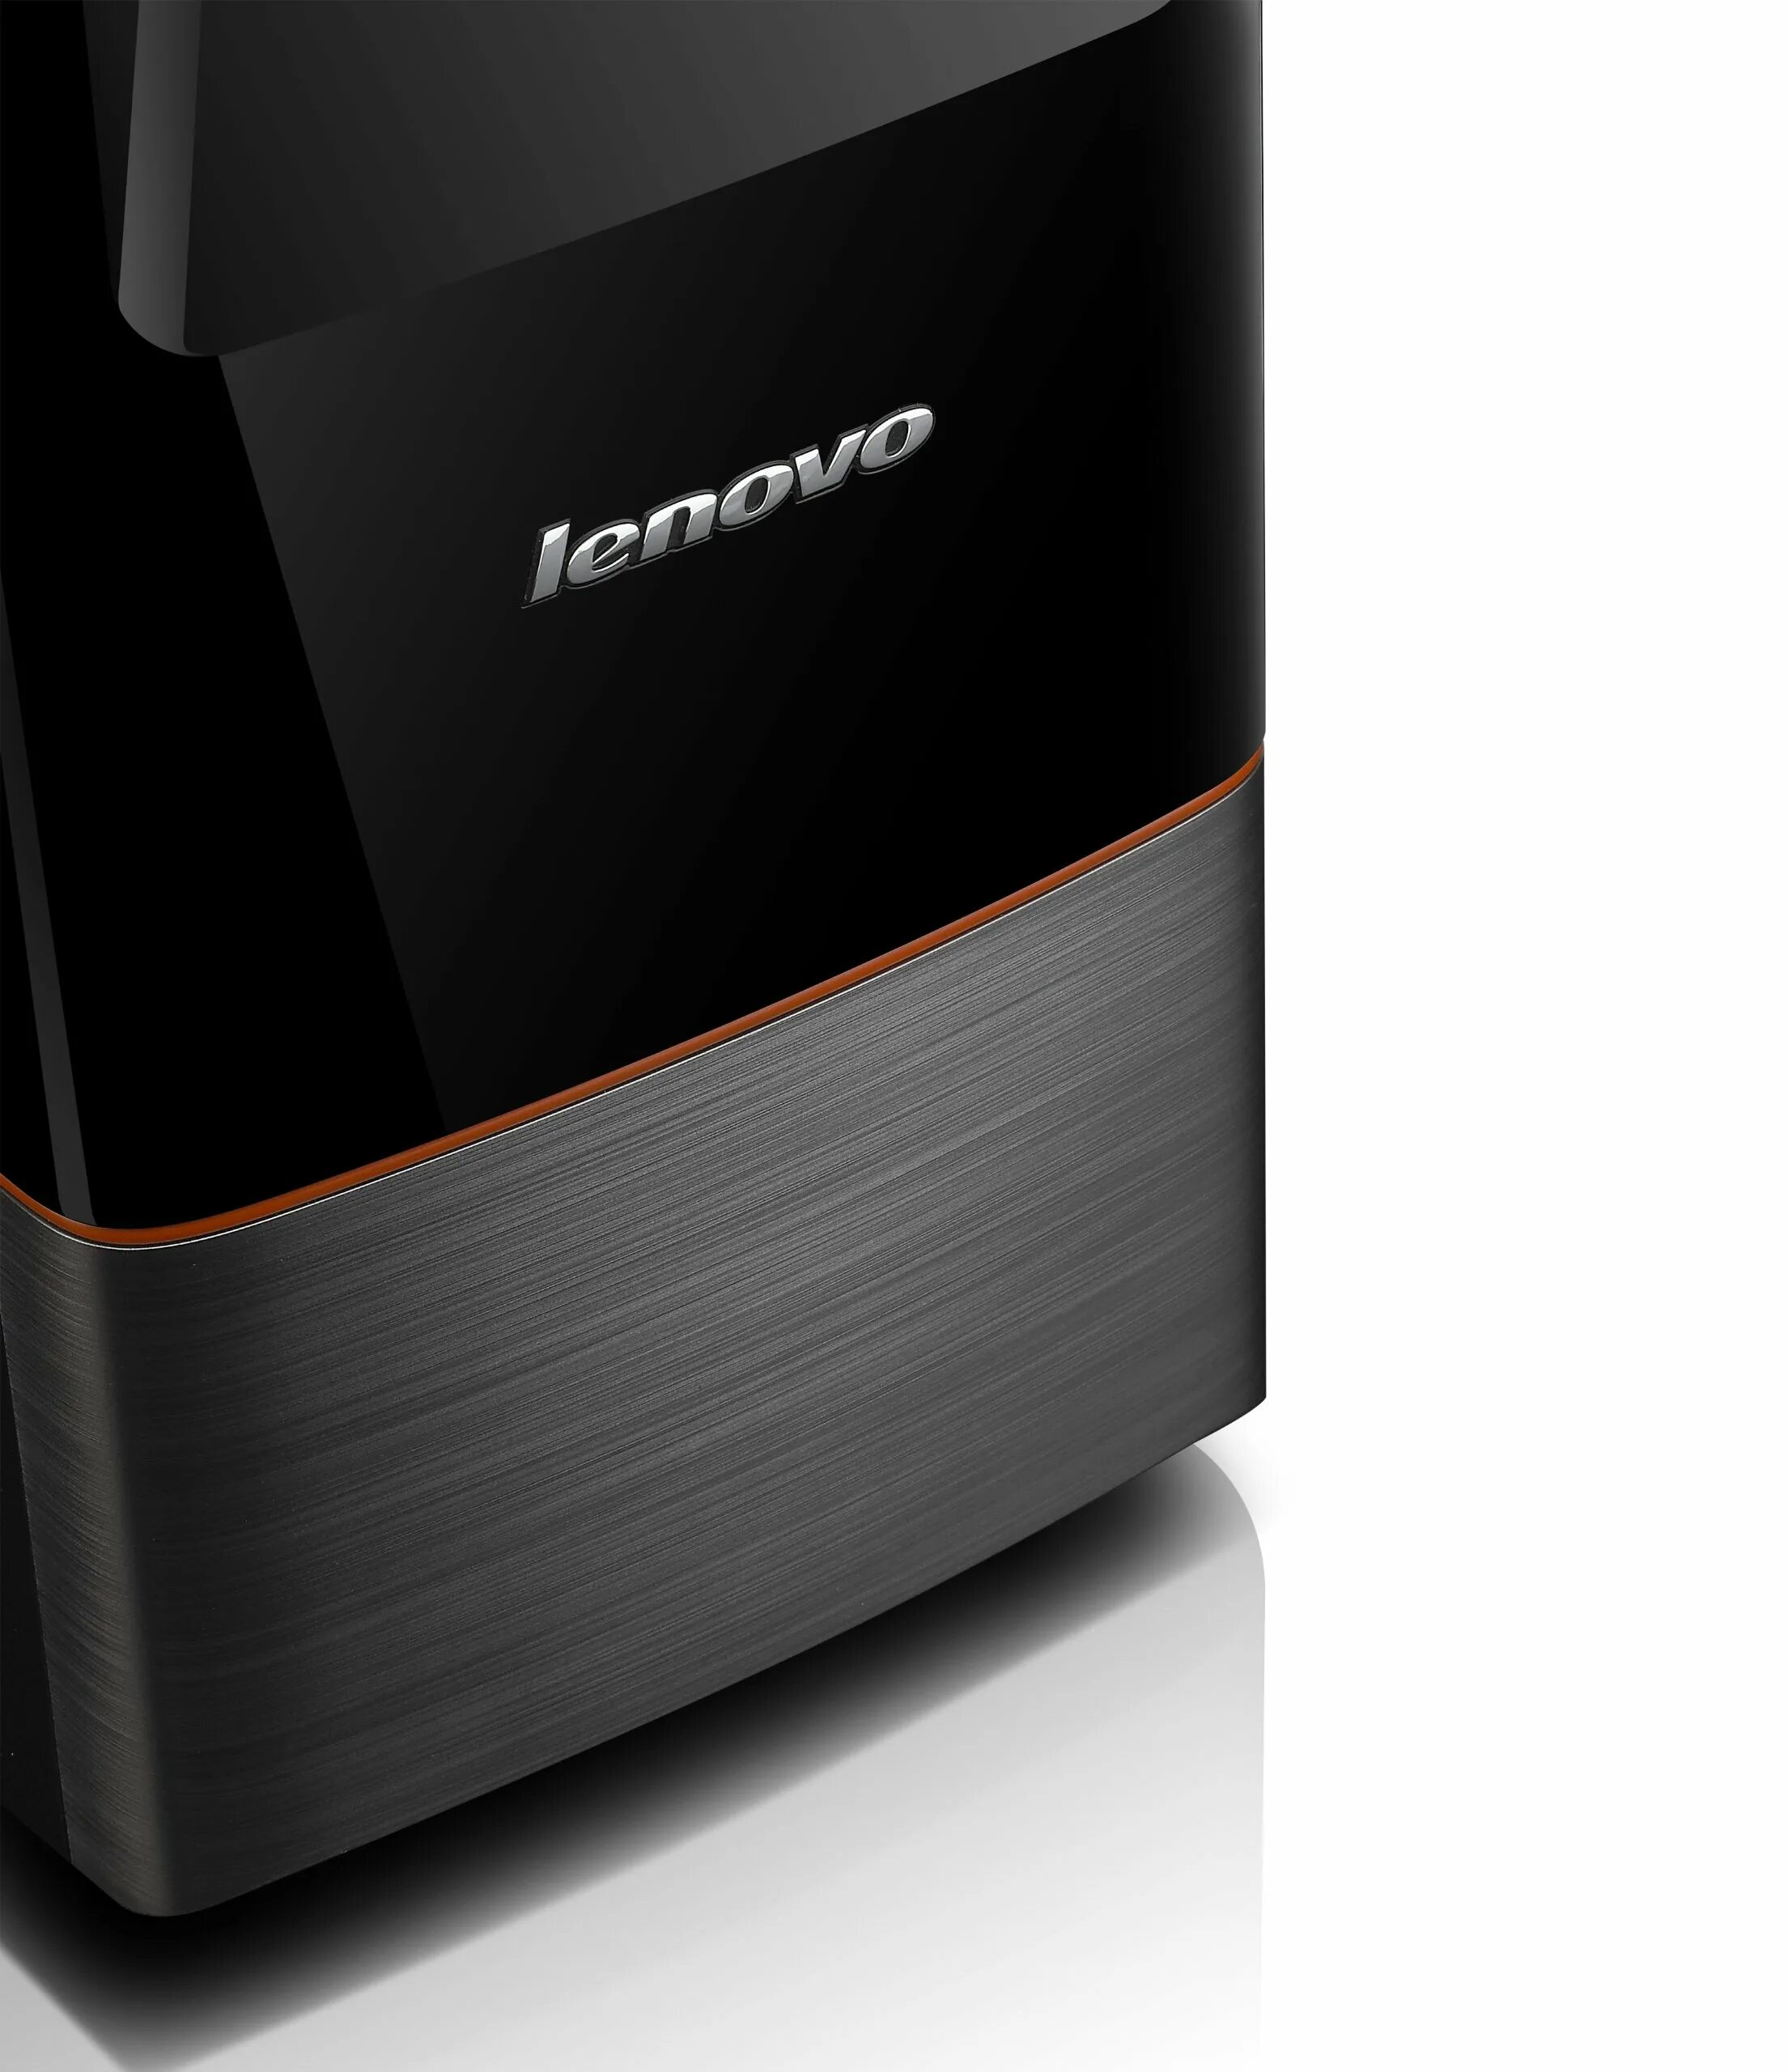 Lenovo IDEACENTRE h430. ПК леново IDEACENTRE. Системный блок Lenovo h430. Компьютер Lenovo 2014. Корпус леново купить